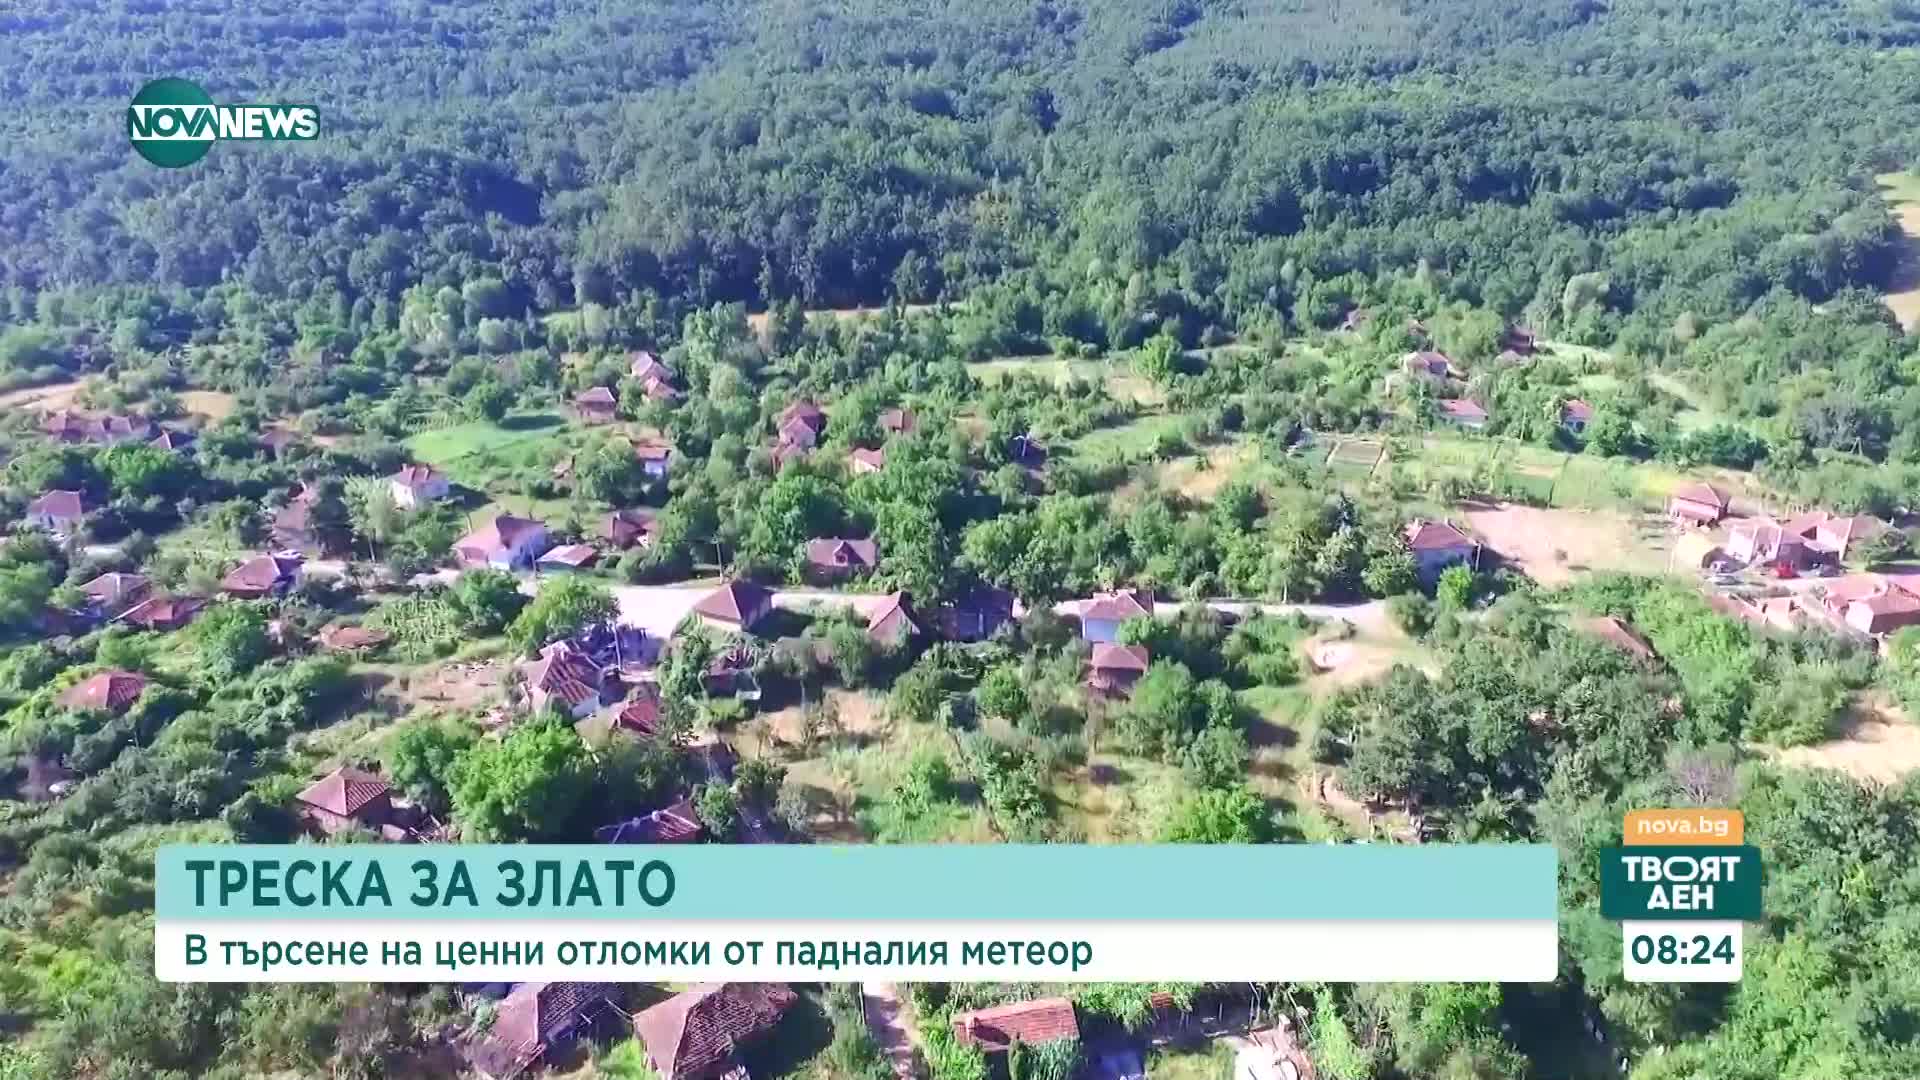 Следотърсачи обикалят Северозападна България в търсене на отломки от метеора